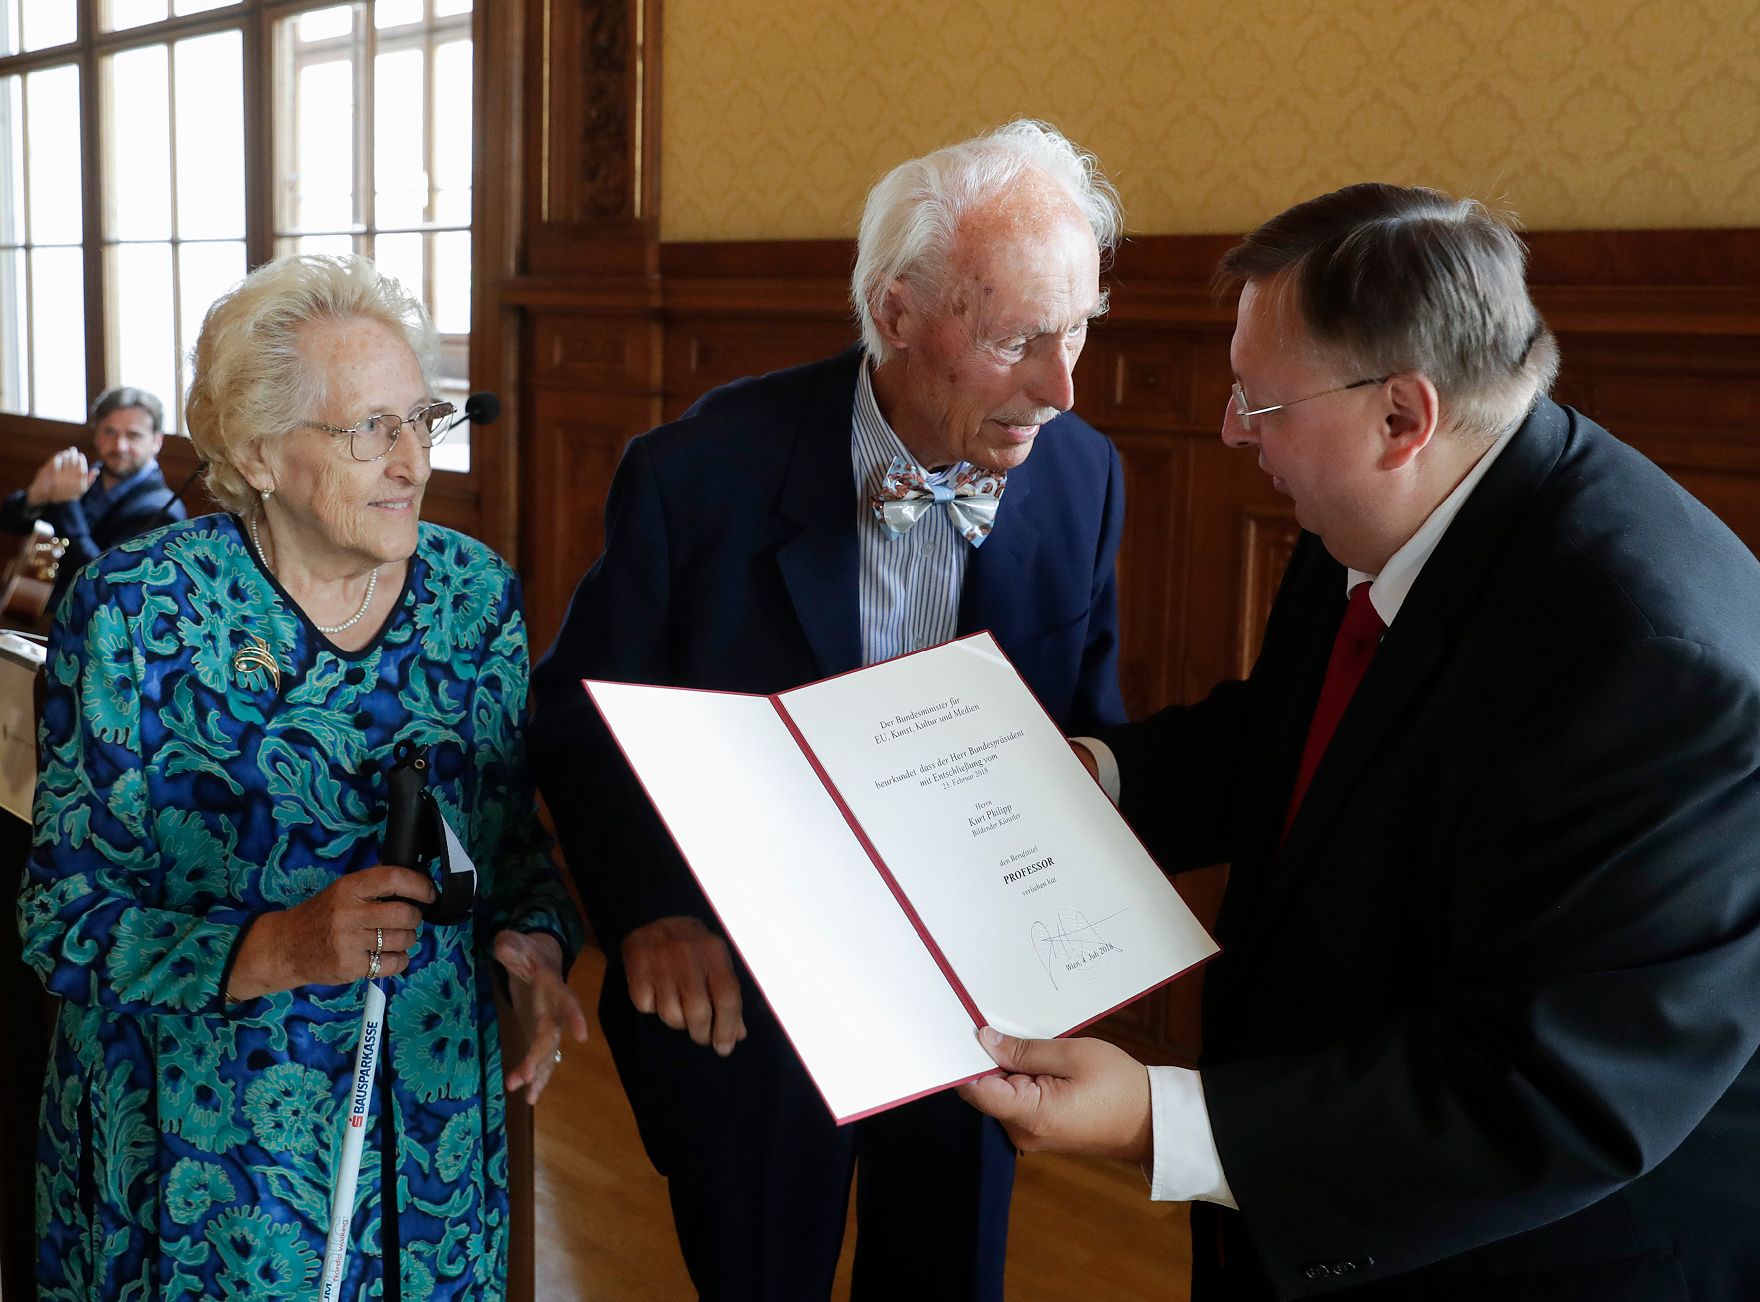 Am 4. Juli 2018 wurden die Urkunde über die Verleihung des Berufstitels Professor an Kurt Philipp (m.) und das Große Ehrenzeichen für Verdienste um die Republik Österreich an Franz Basdera überreicht. Im Bild mit Reinhold Hohengartner (r.).